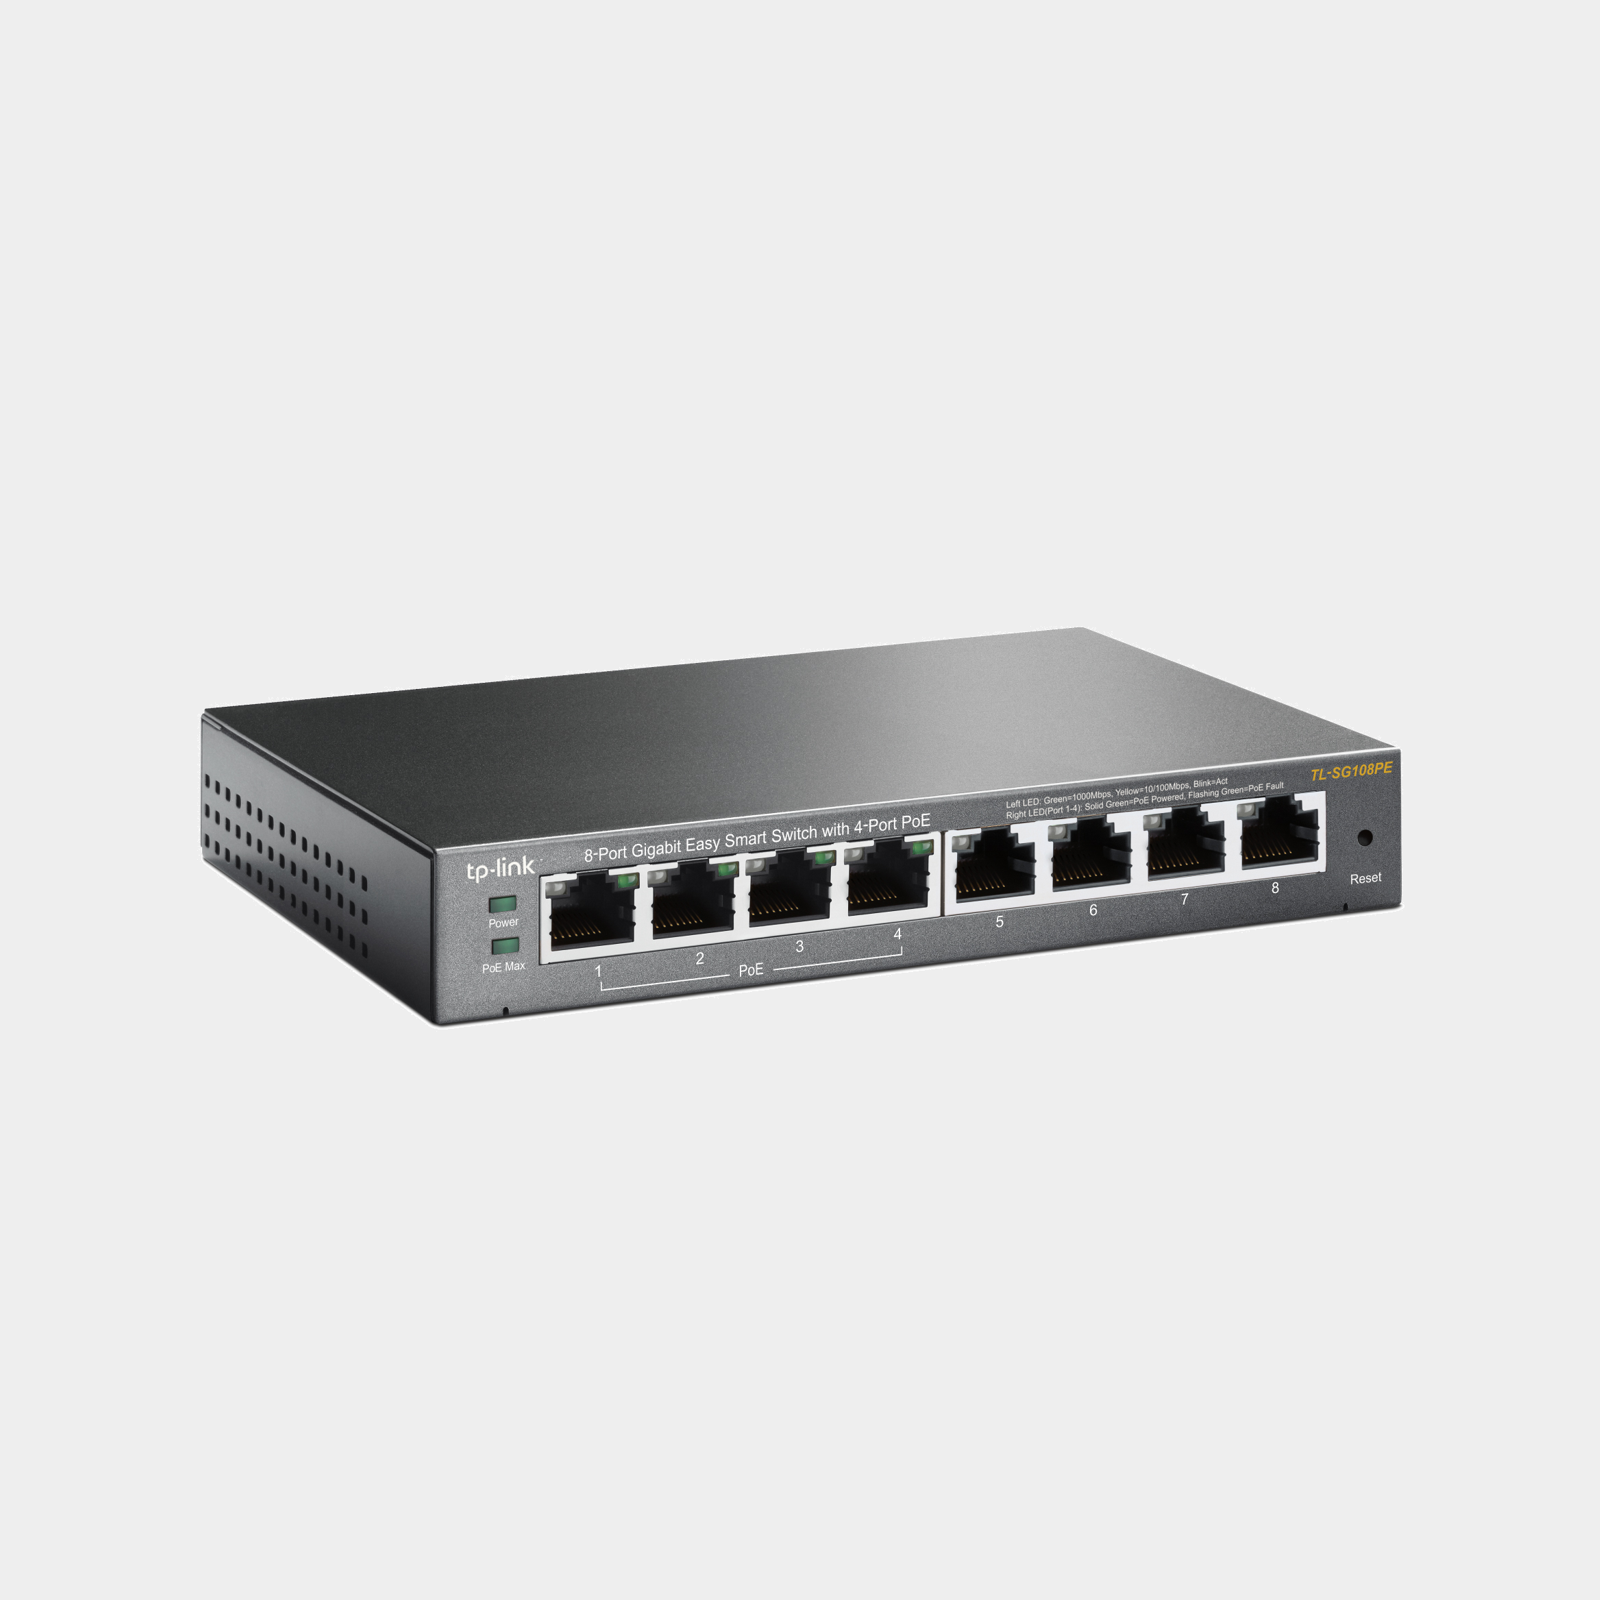 TP-Link 8-Port Gigabit Easy Smart Switch with 4-Port PoE (TL-SG108PE)